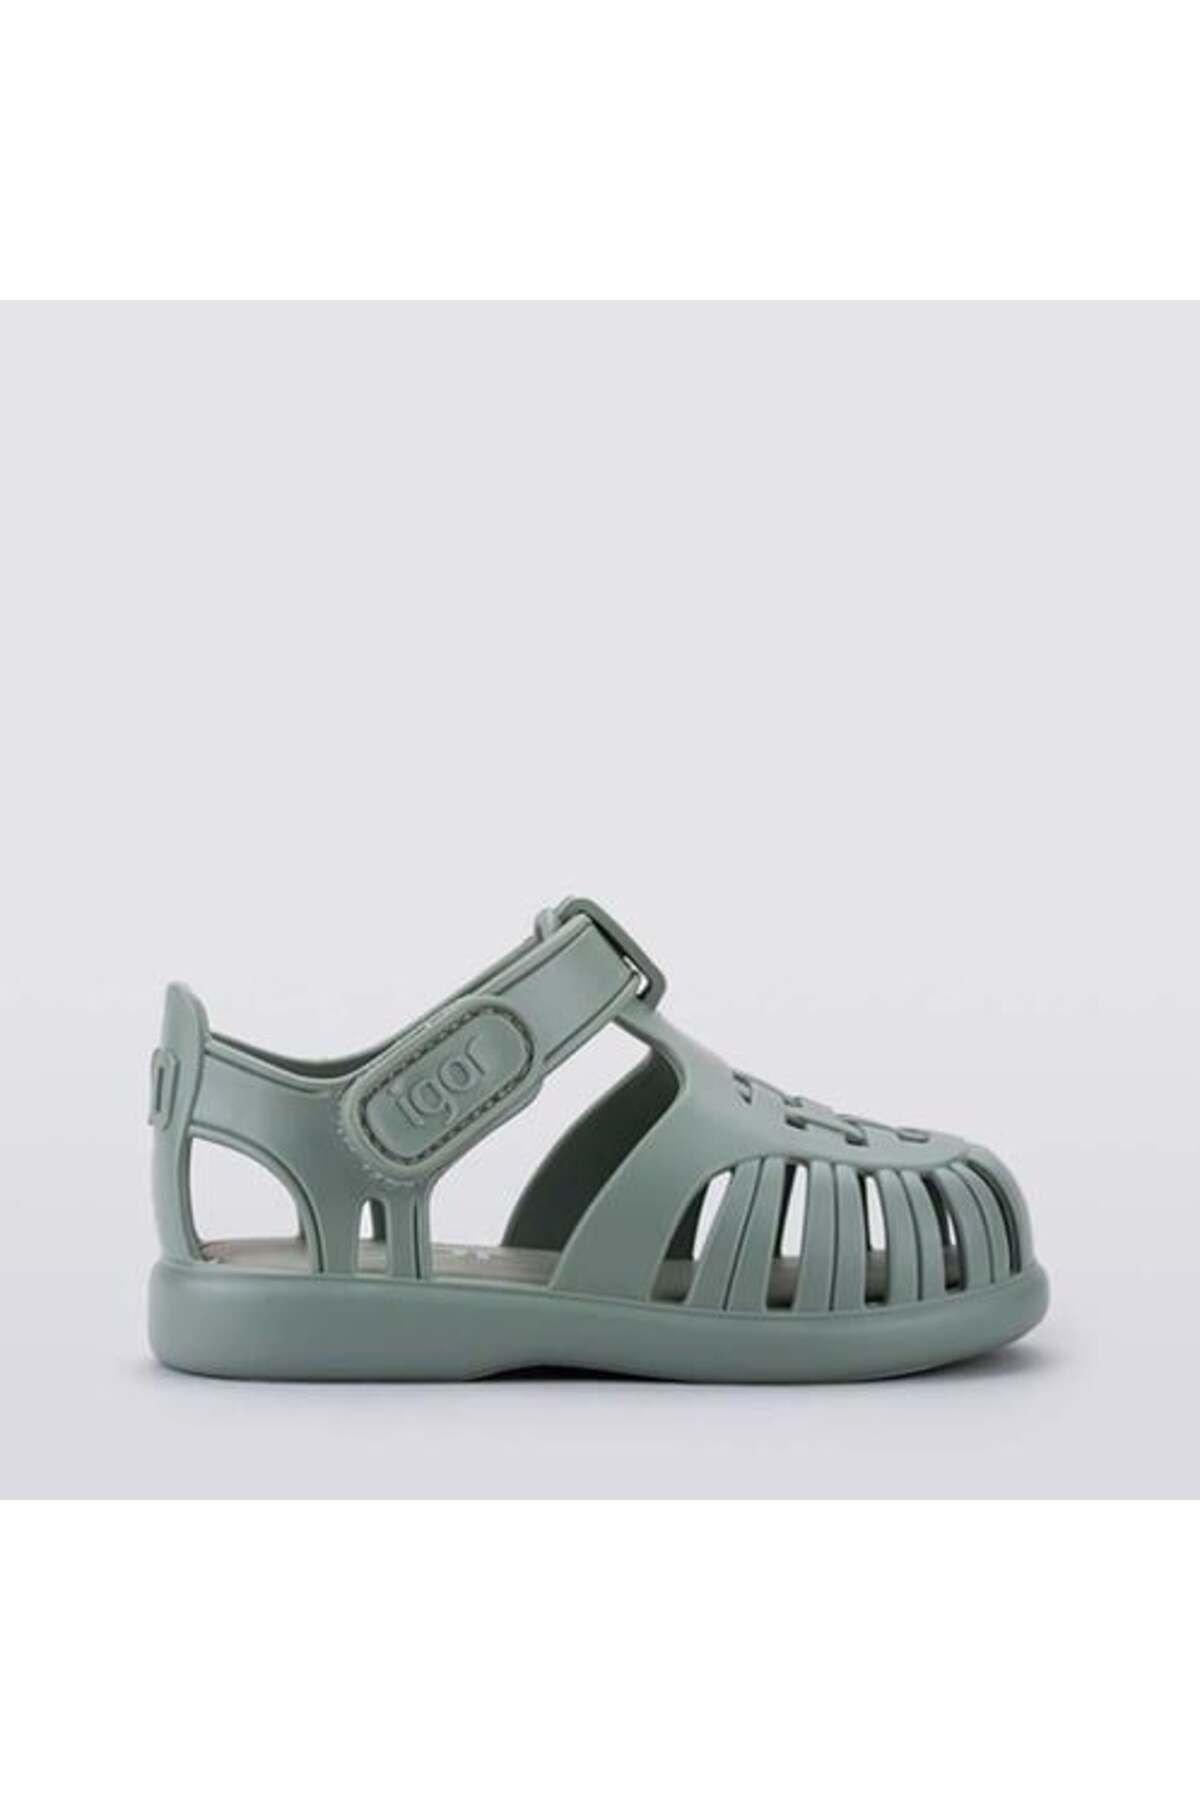 IGOR Tobby Solid - Nuevo Verde Çocuk Cırtlı Sandalet